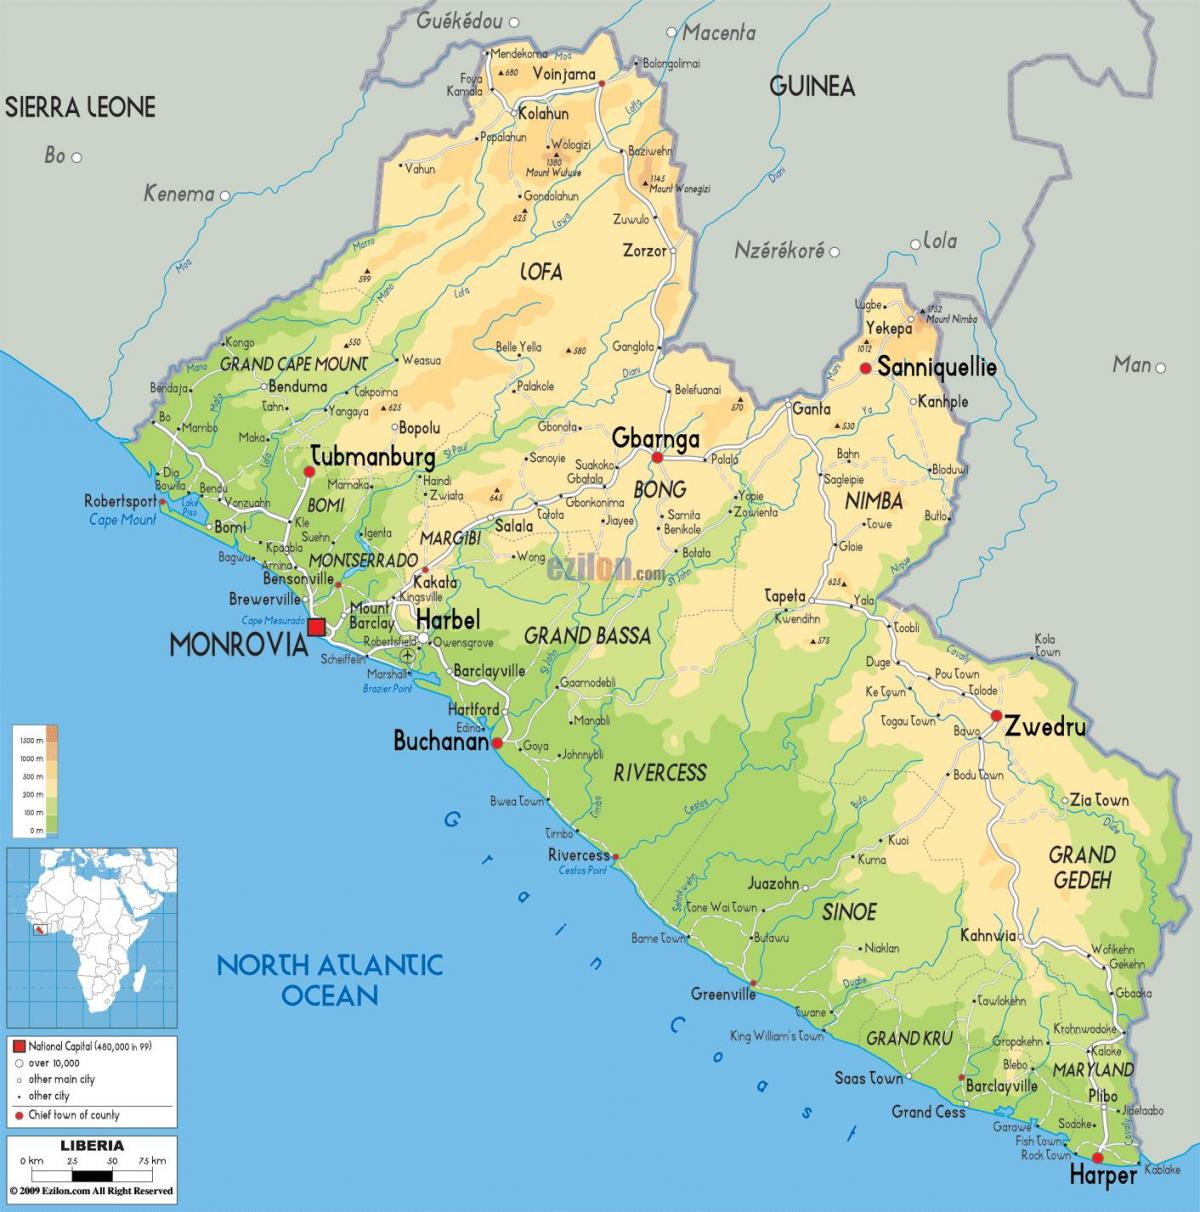 նկարել քարտեզի վրա Լիբերիայի